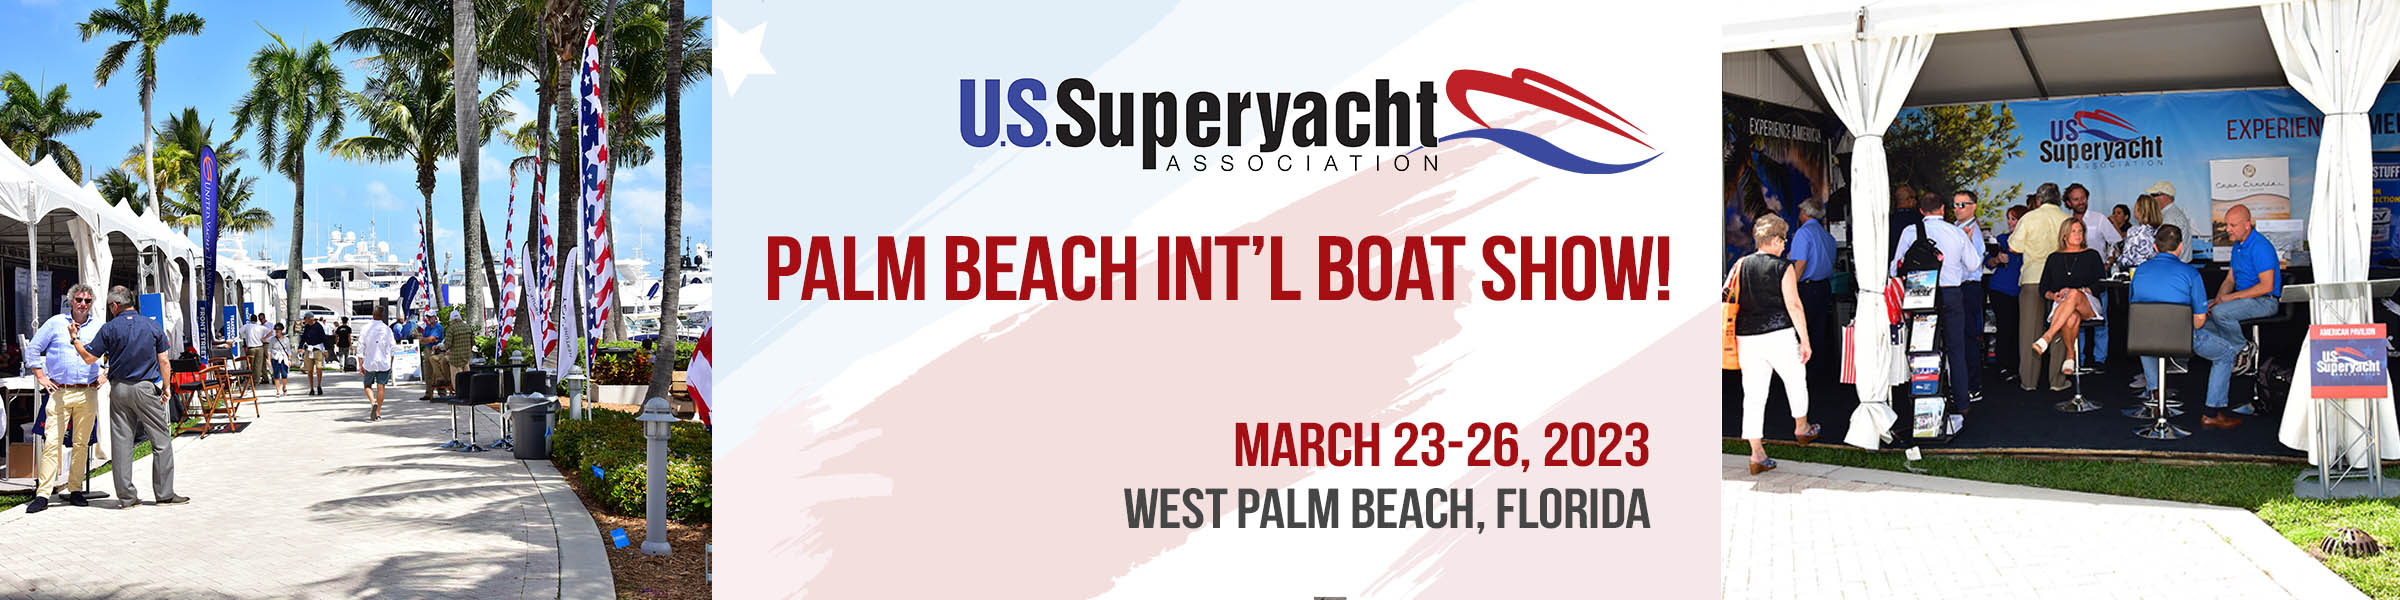 Palm Beach Boat Show header